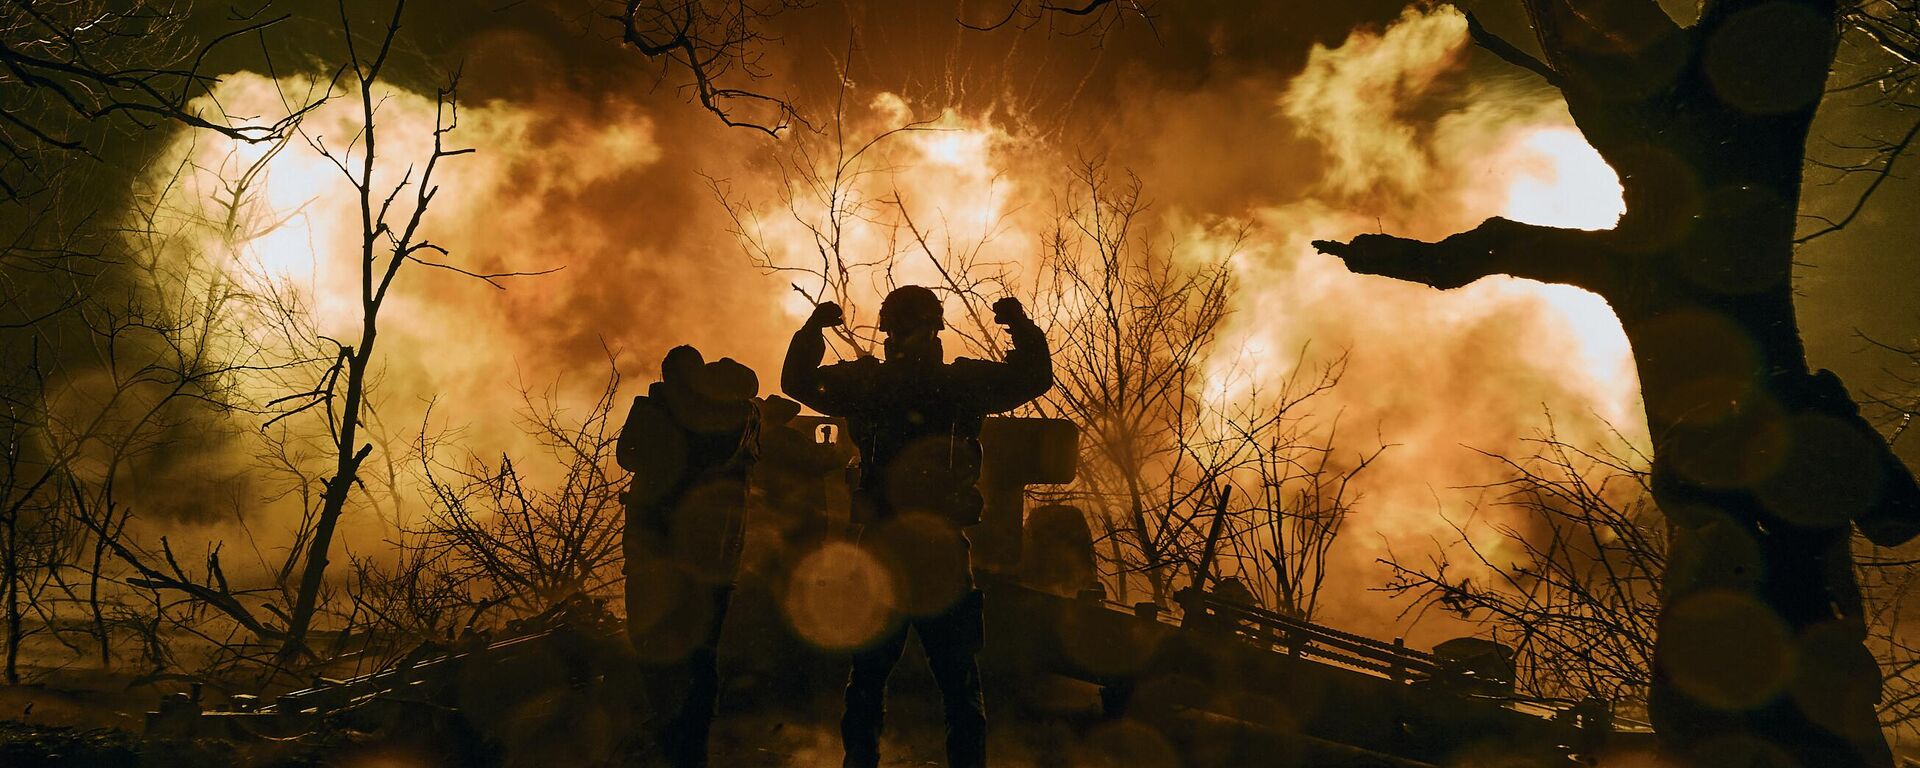  جنود أوكرانيون يطلقون نيران المدفعية على مواقع روسية بالقرب من باخموت في منطقة دونيتسك، 20 نوفمبر 2022.  - سبوتنيك عربي, 1920, 14.09.2023